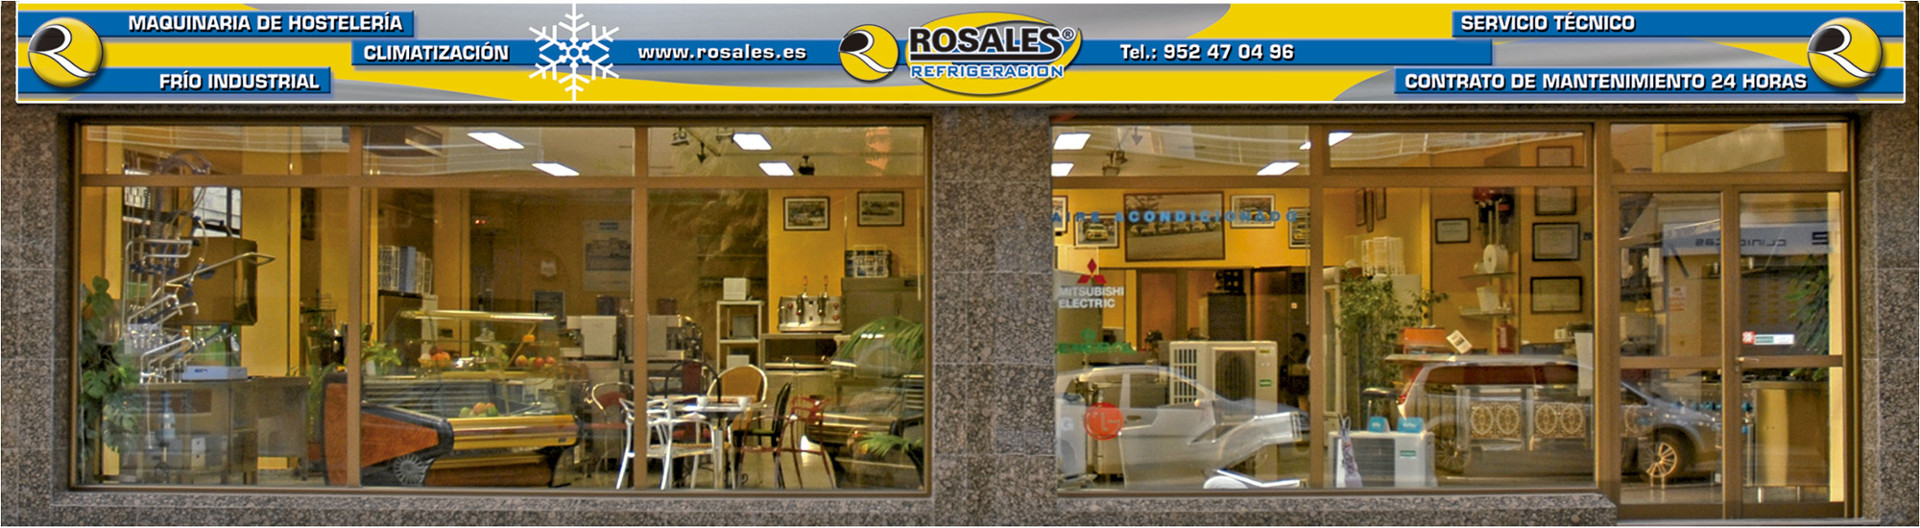 Tienda Rosales Fuengirola